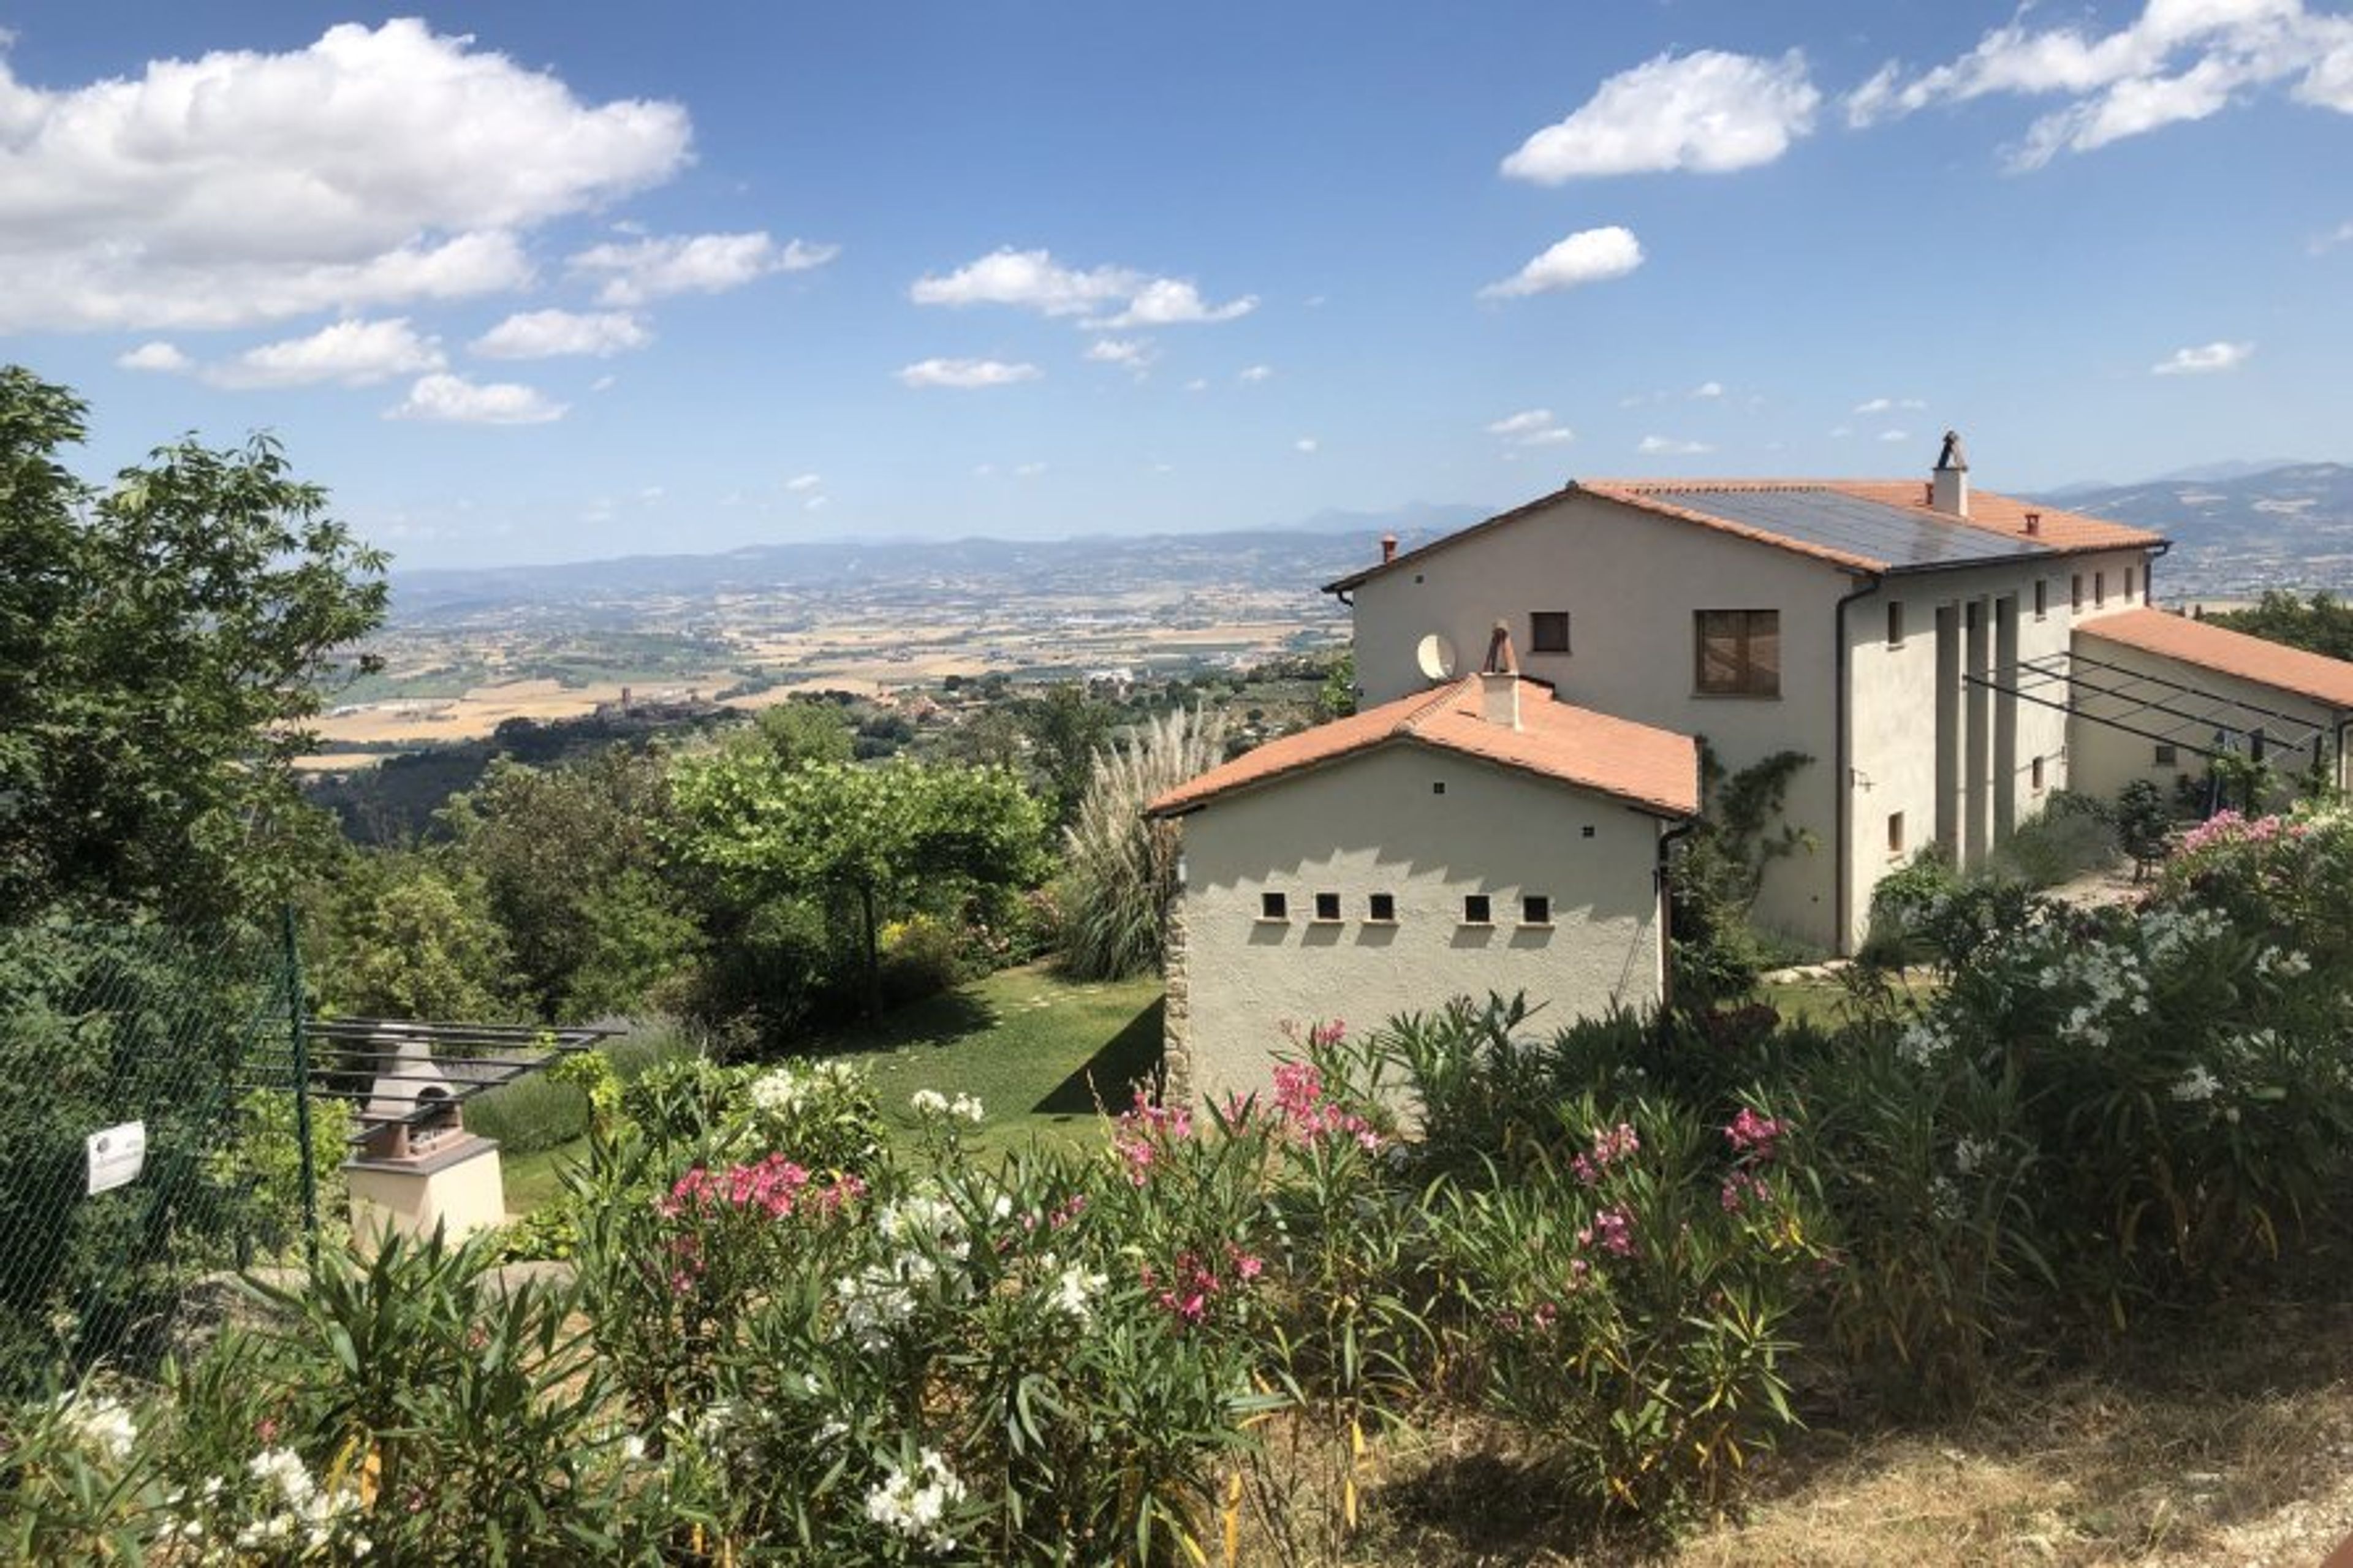 The villa Montemerlino